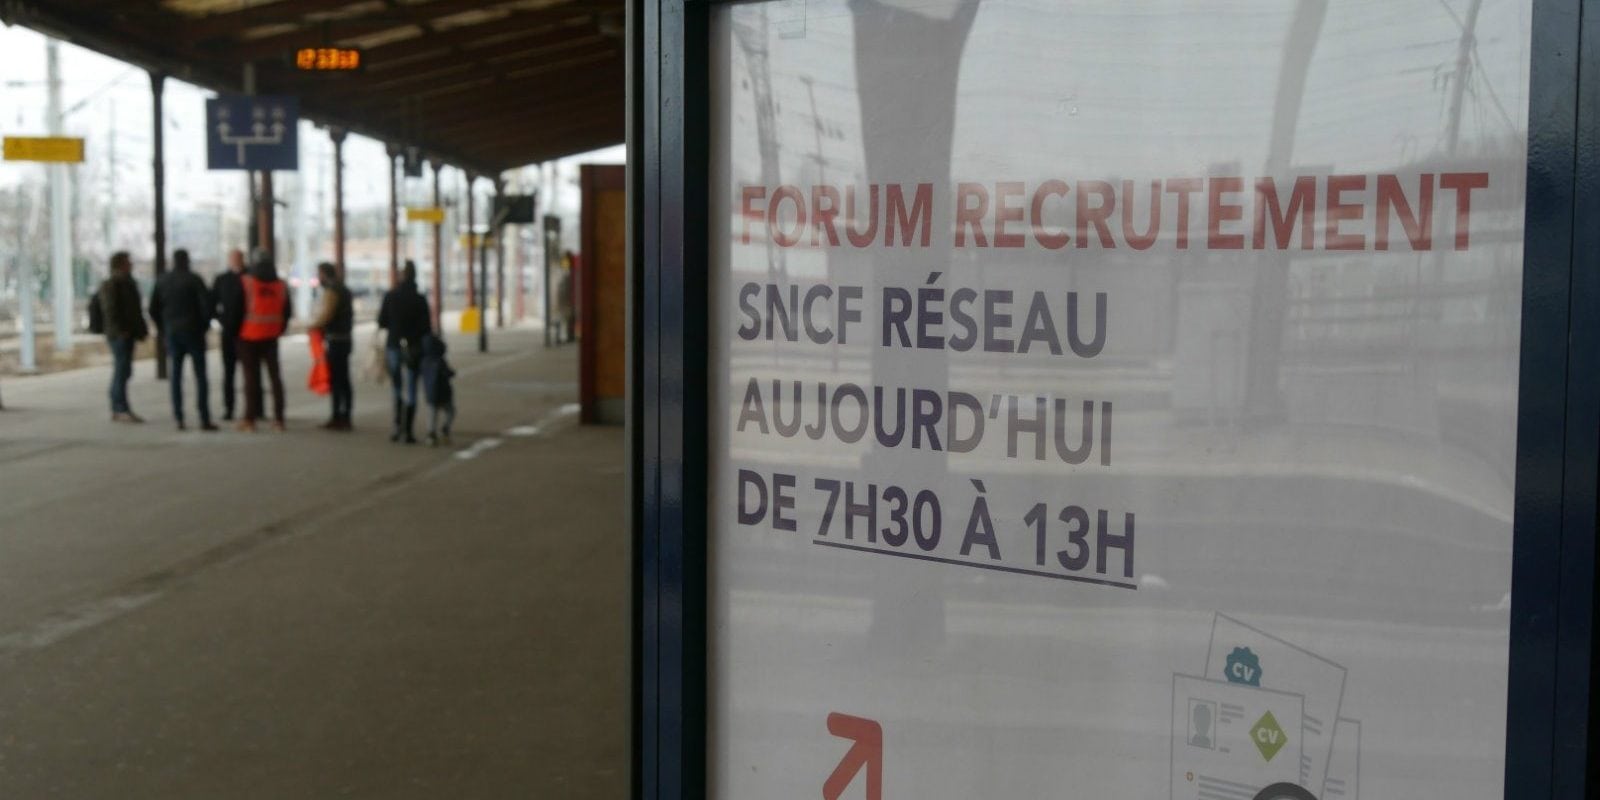 À un forum de recrutement de la SNCF : une réforme ? Quelle réforme ?